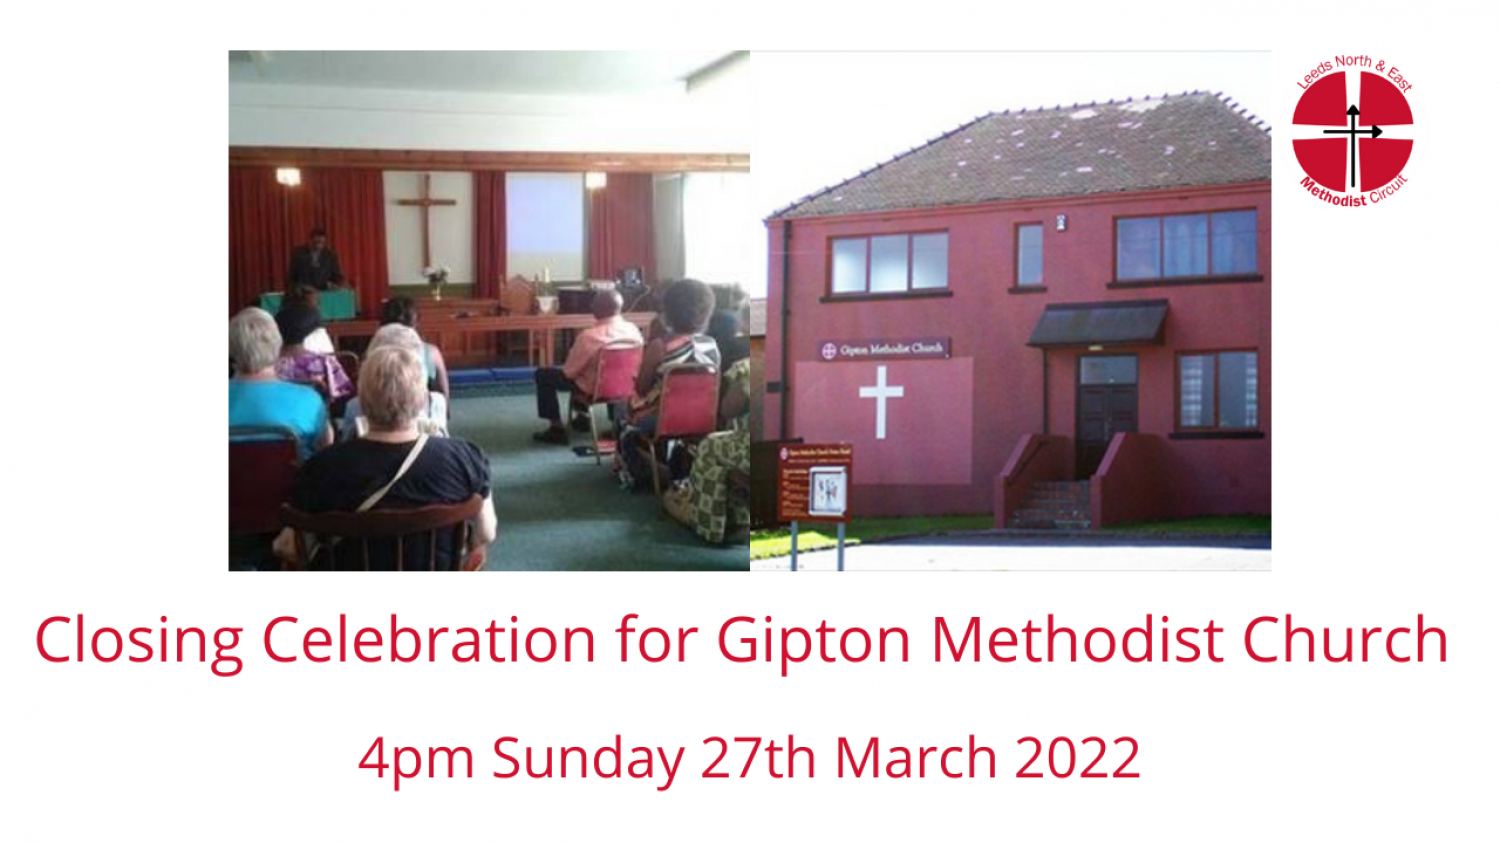 celebrating 86 years of worship at gipton methodist church